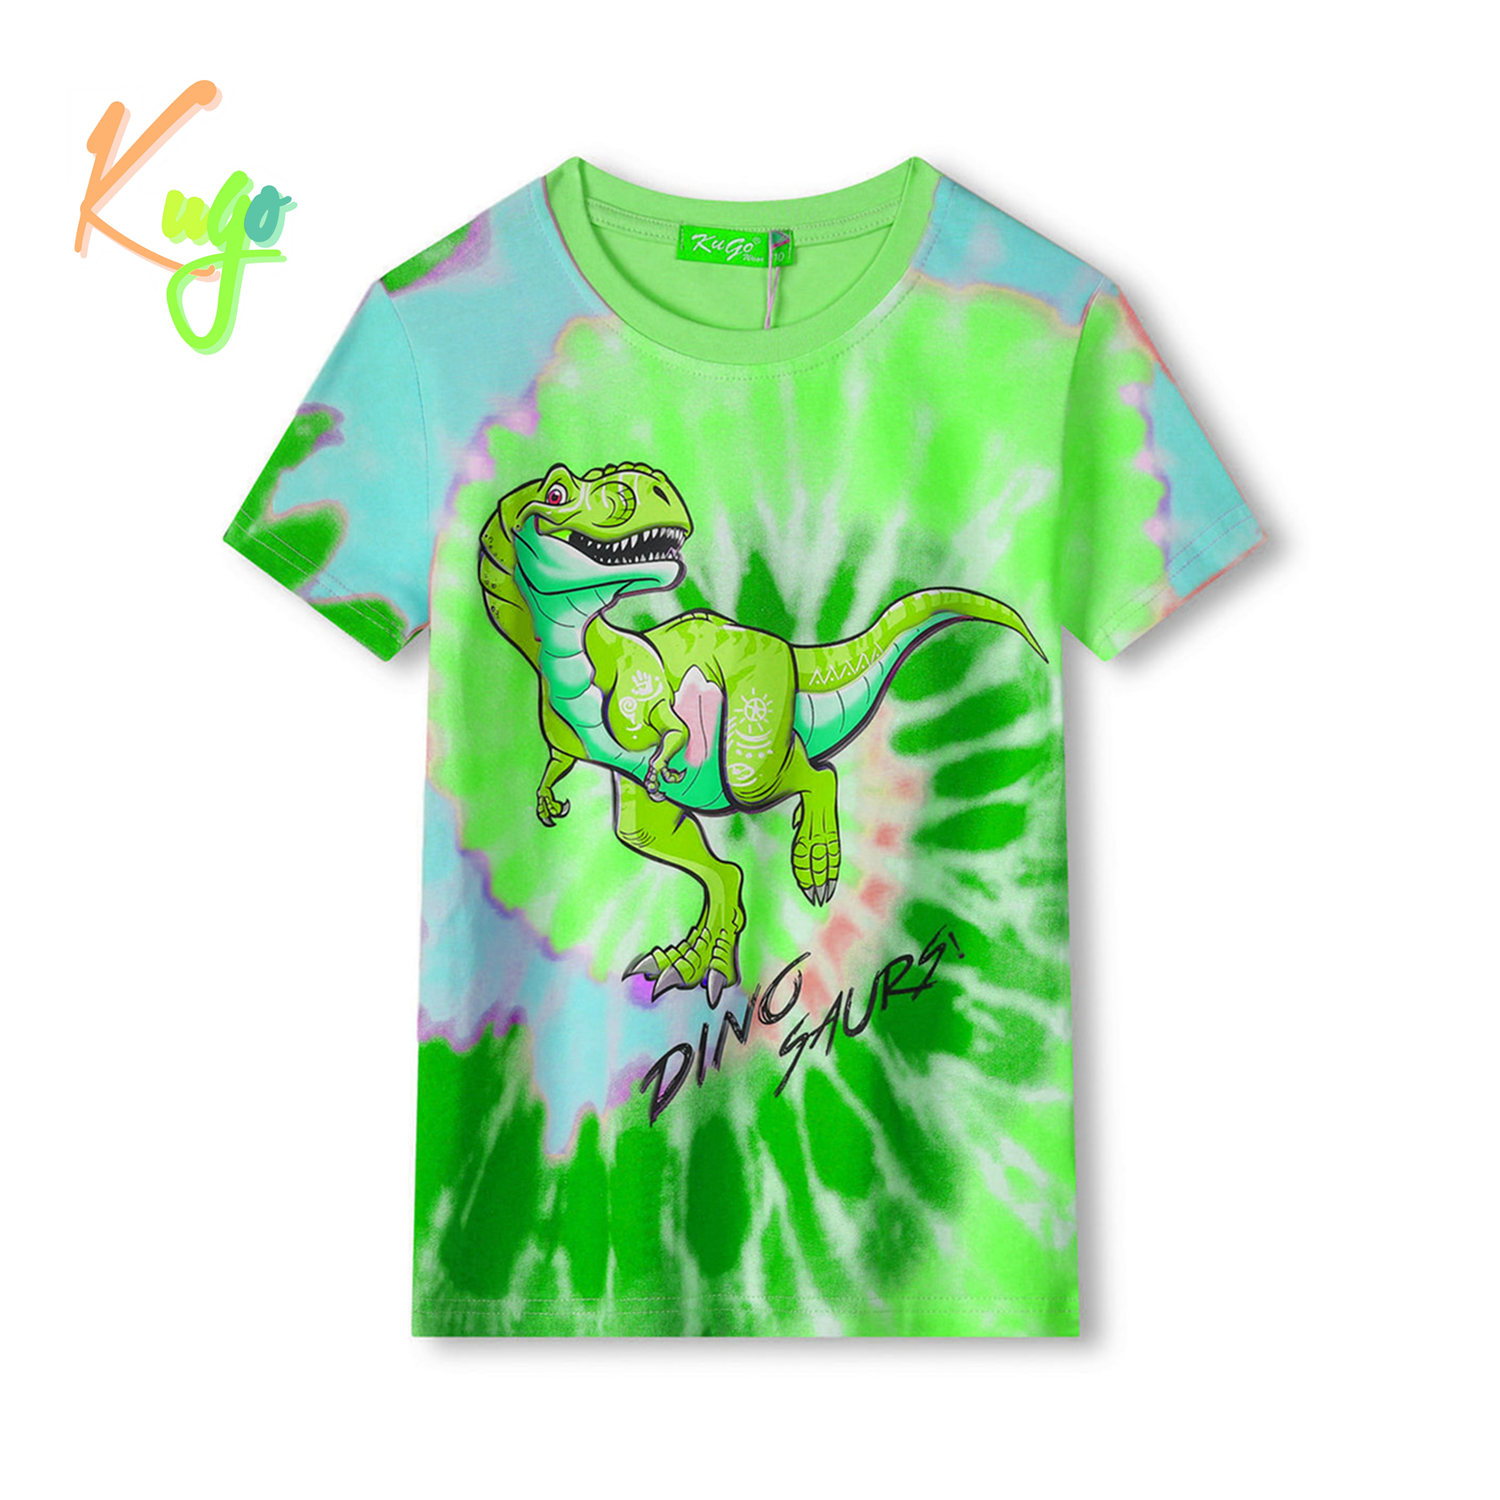 Chlapecké tričko - KUGO FC0301, zelená / modrý dinosaurus Barva: Zelená, Velikost: 110